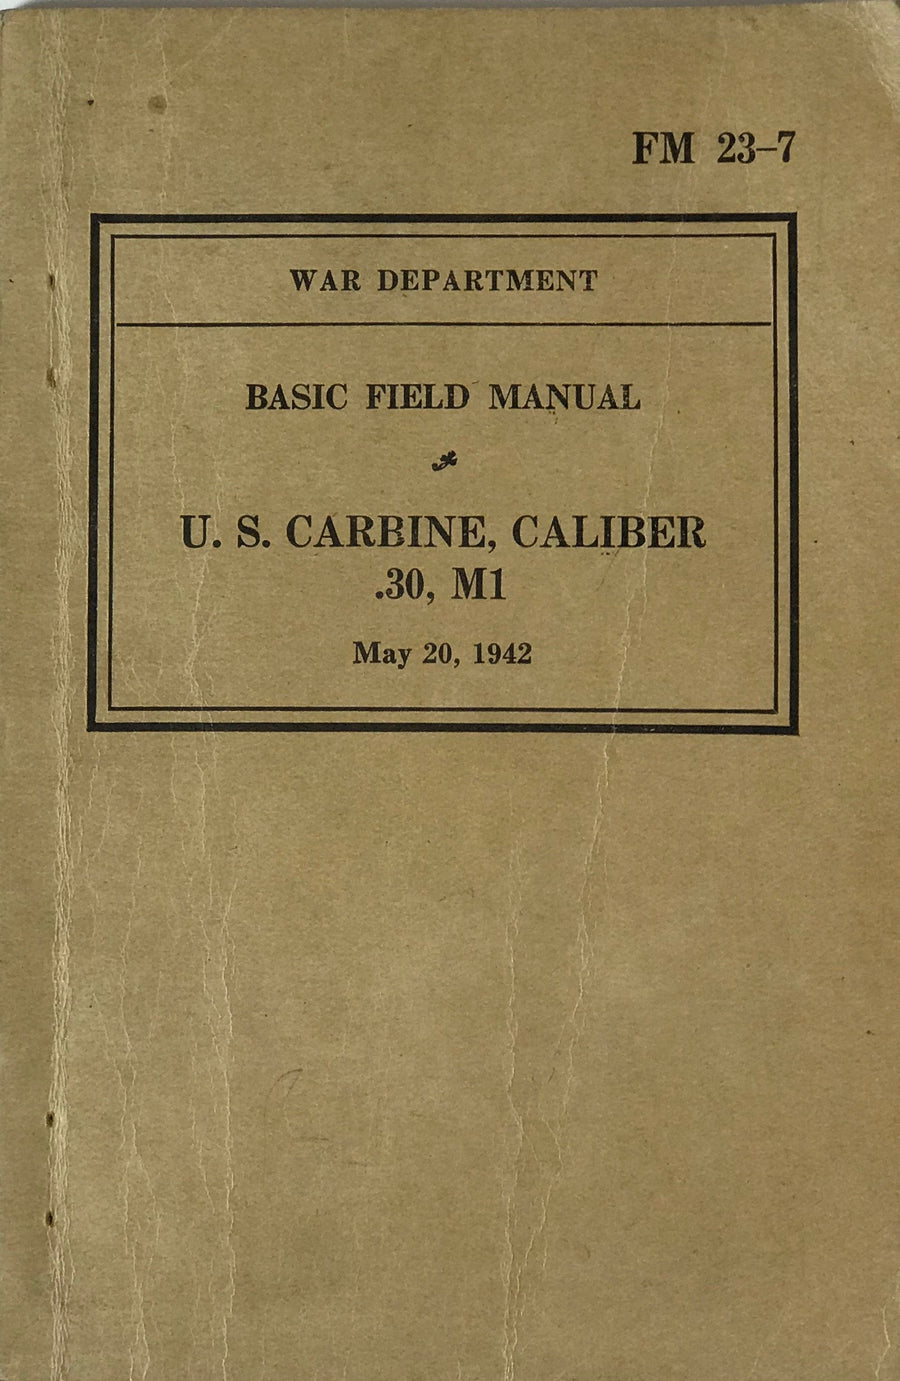 Basic Field Manual, May 1942